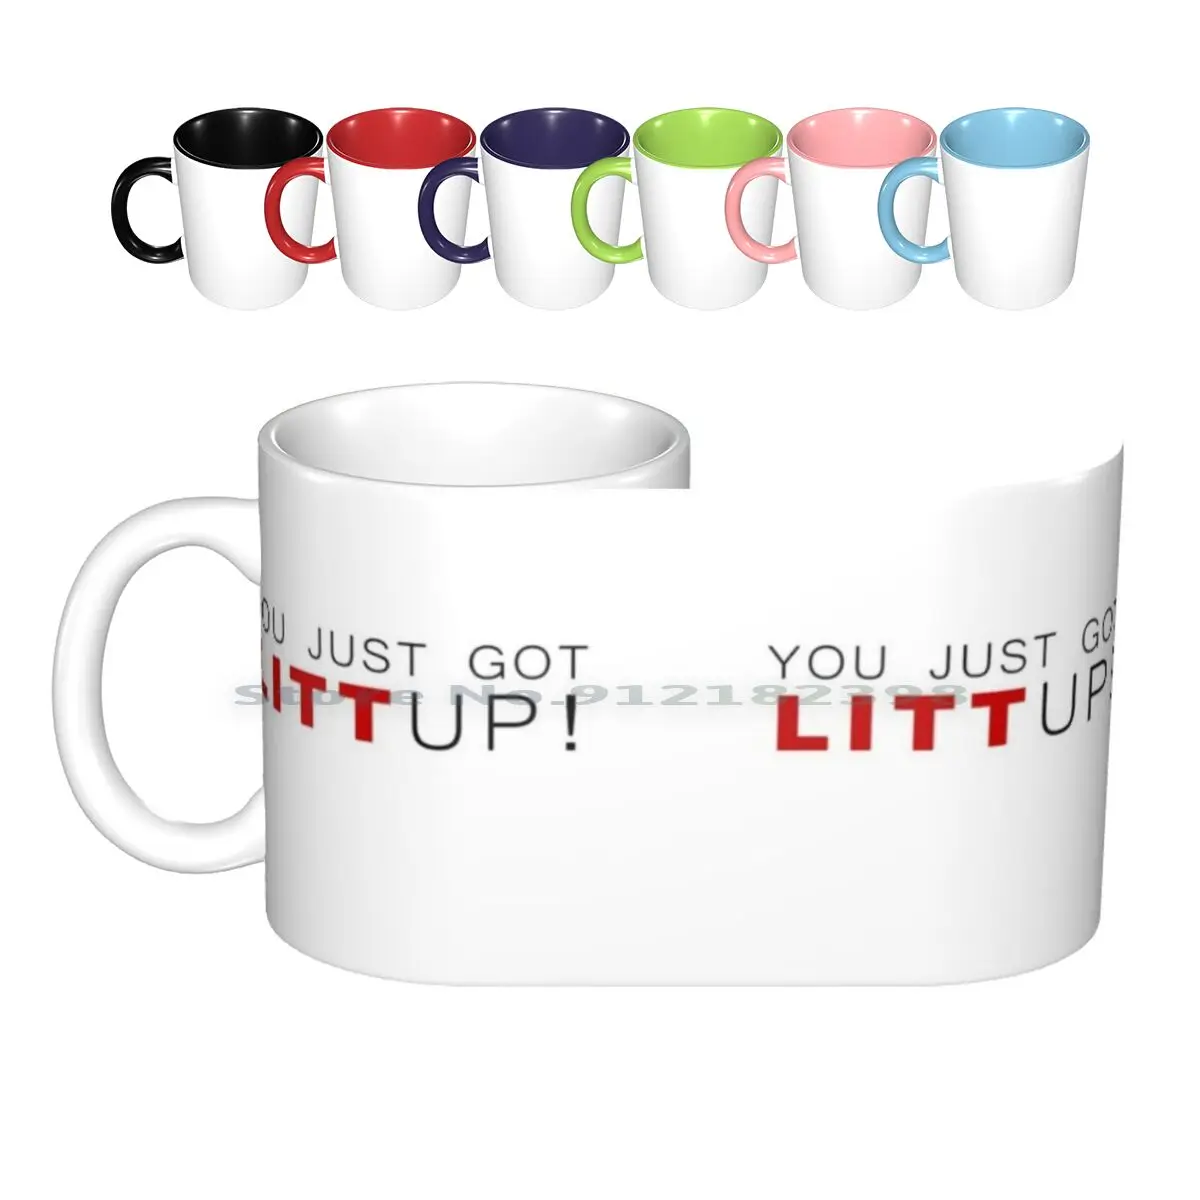 

You Just Got Litt Up! - Suits Mug Ceramic Mugs Coffee Cups Milk Tea Mug You Just Got Litt Up Louis Litt Harvey Mike Suits Hell